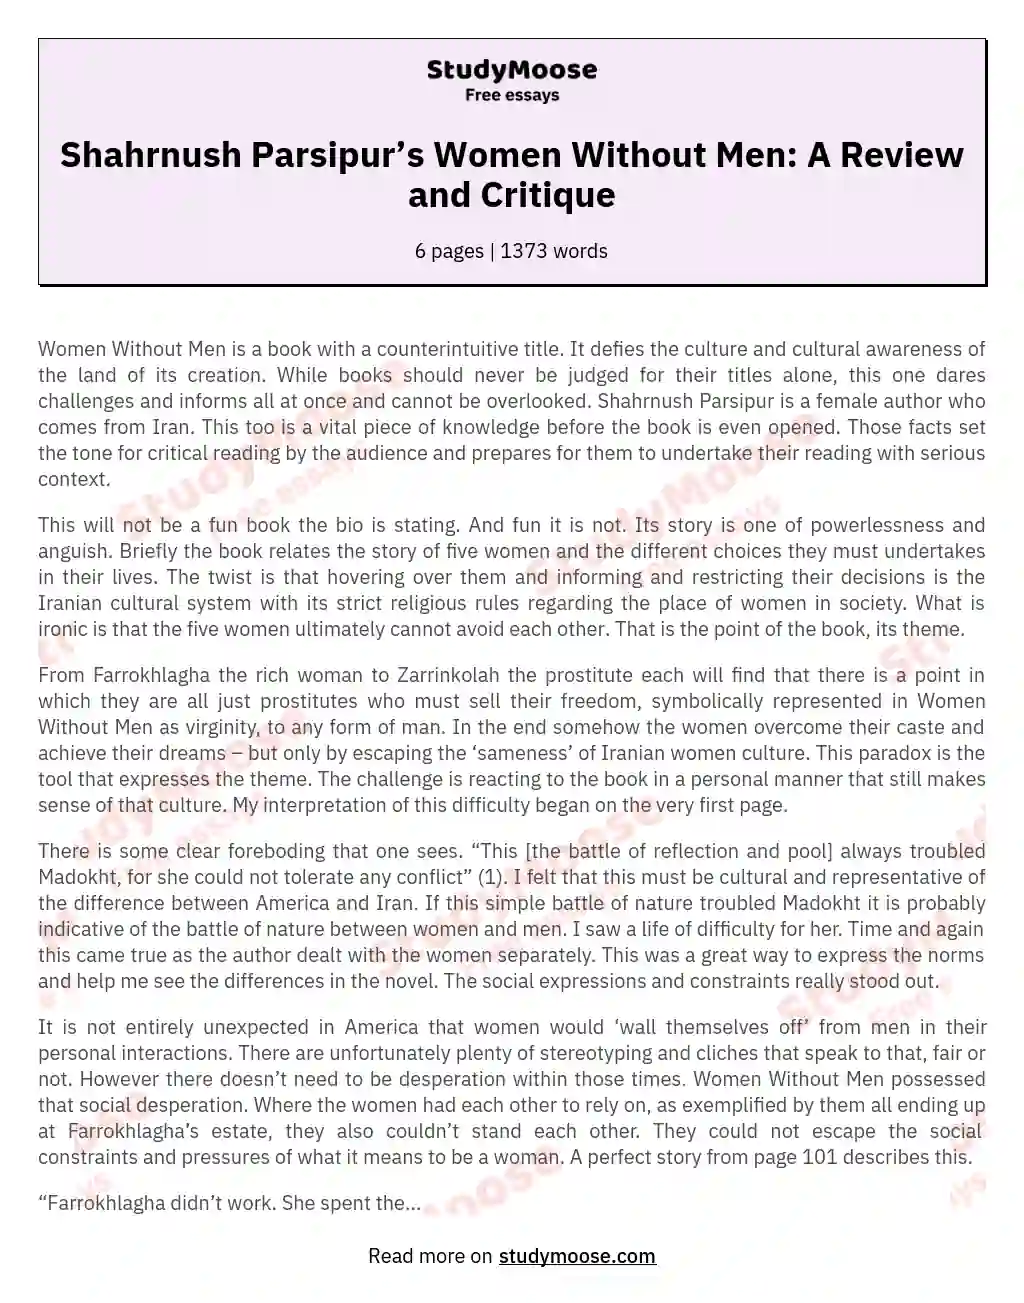 Shahrnush Parsipur’s Women Without Men: A Review and Critique essay